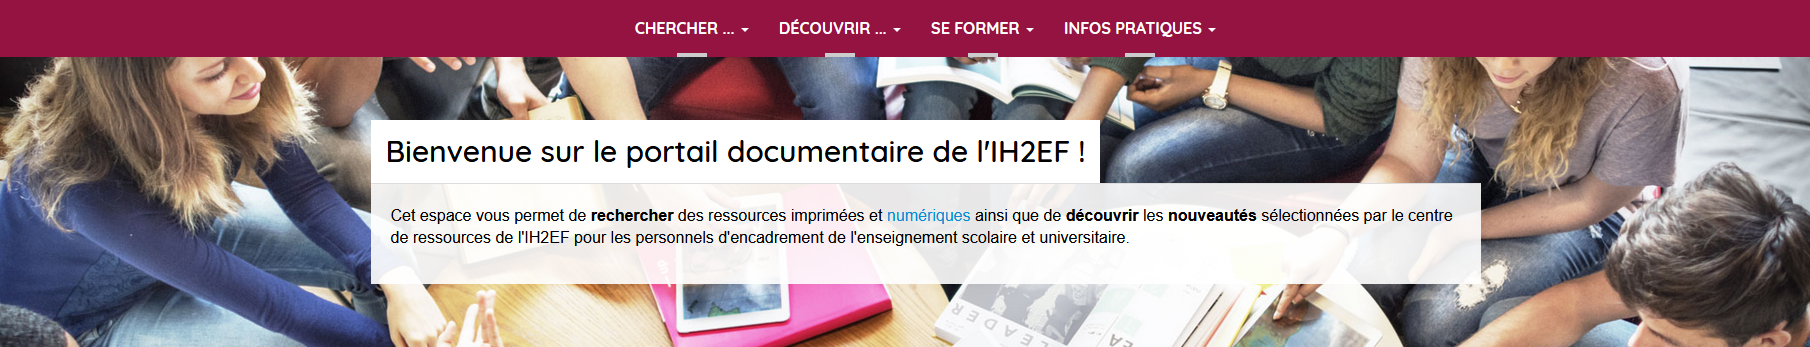 Cliquez pour accéder au portail documentaire de l'IH2EF